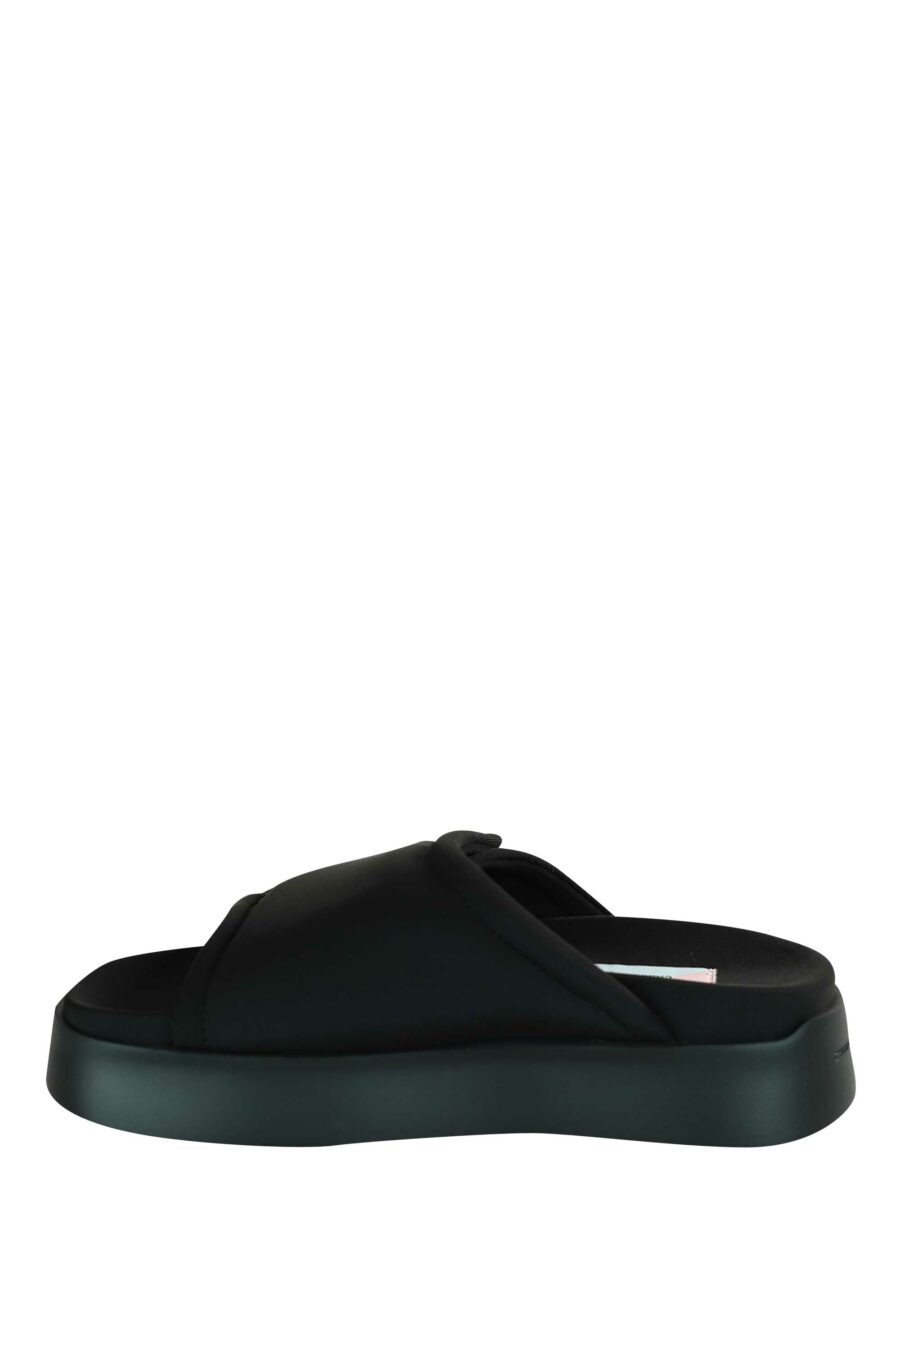 Sandalias negras con velcro y plataforma negra - 8059482630771 3